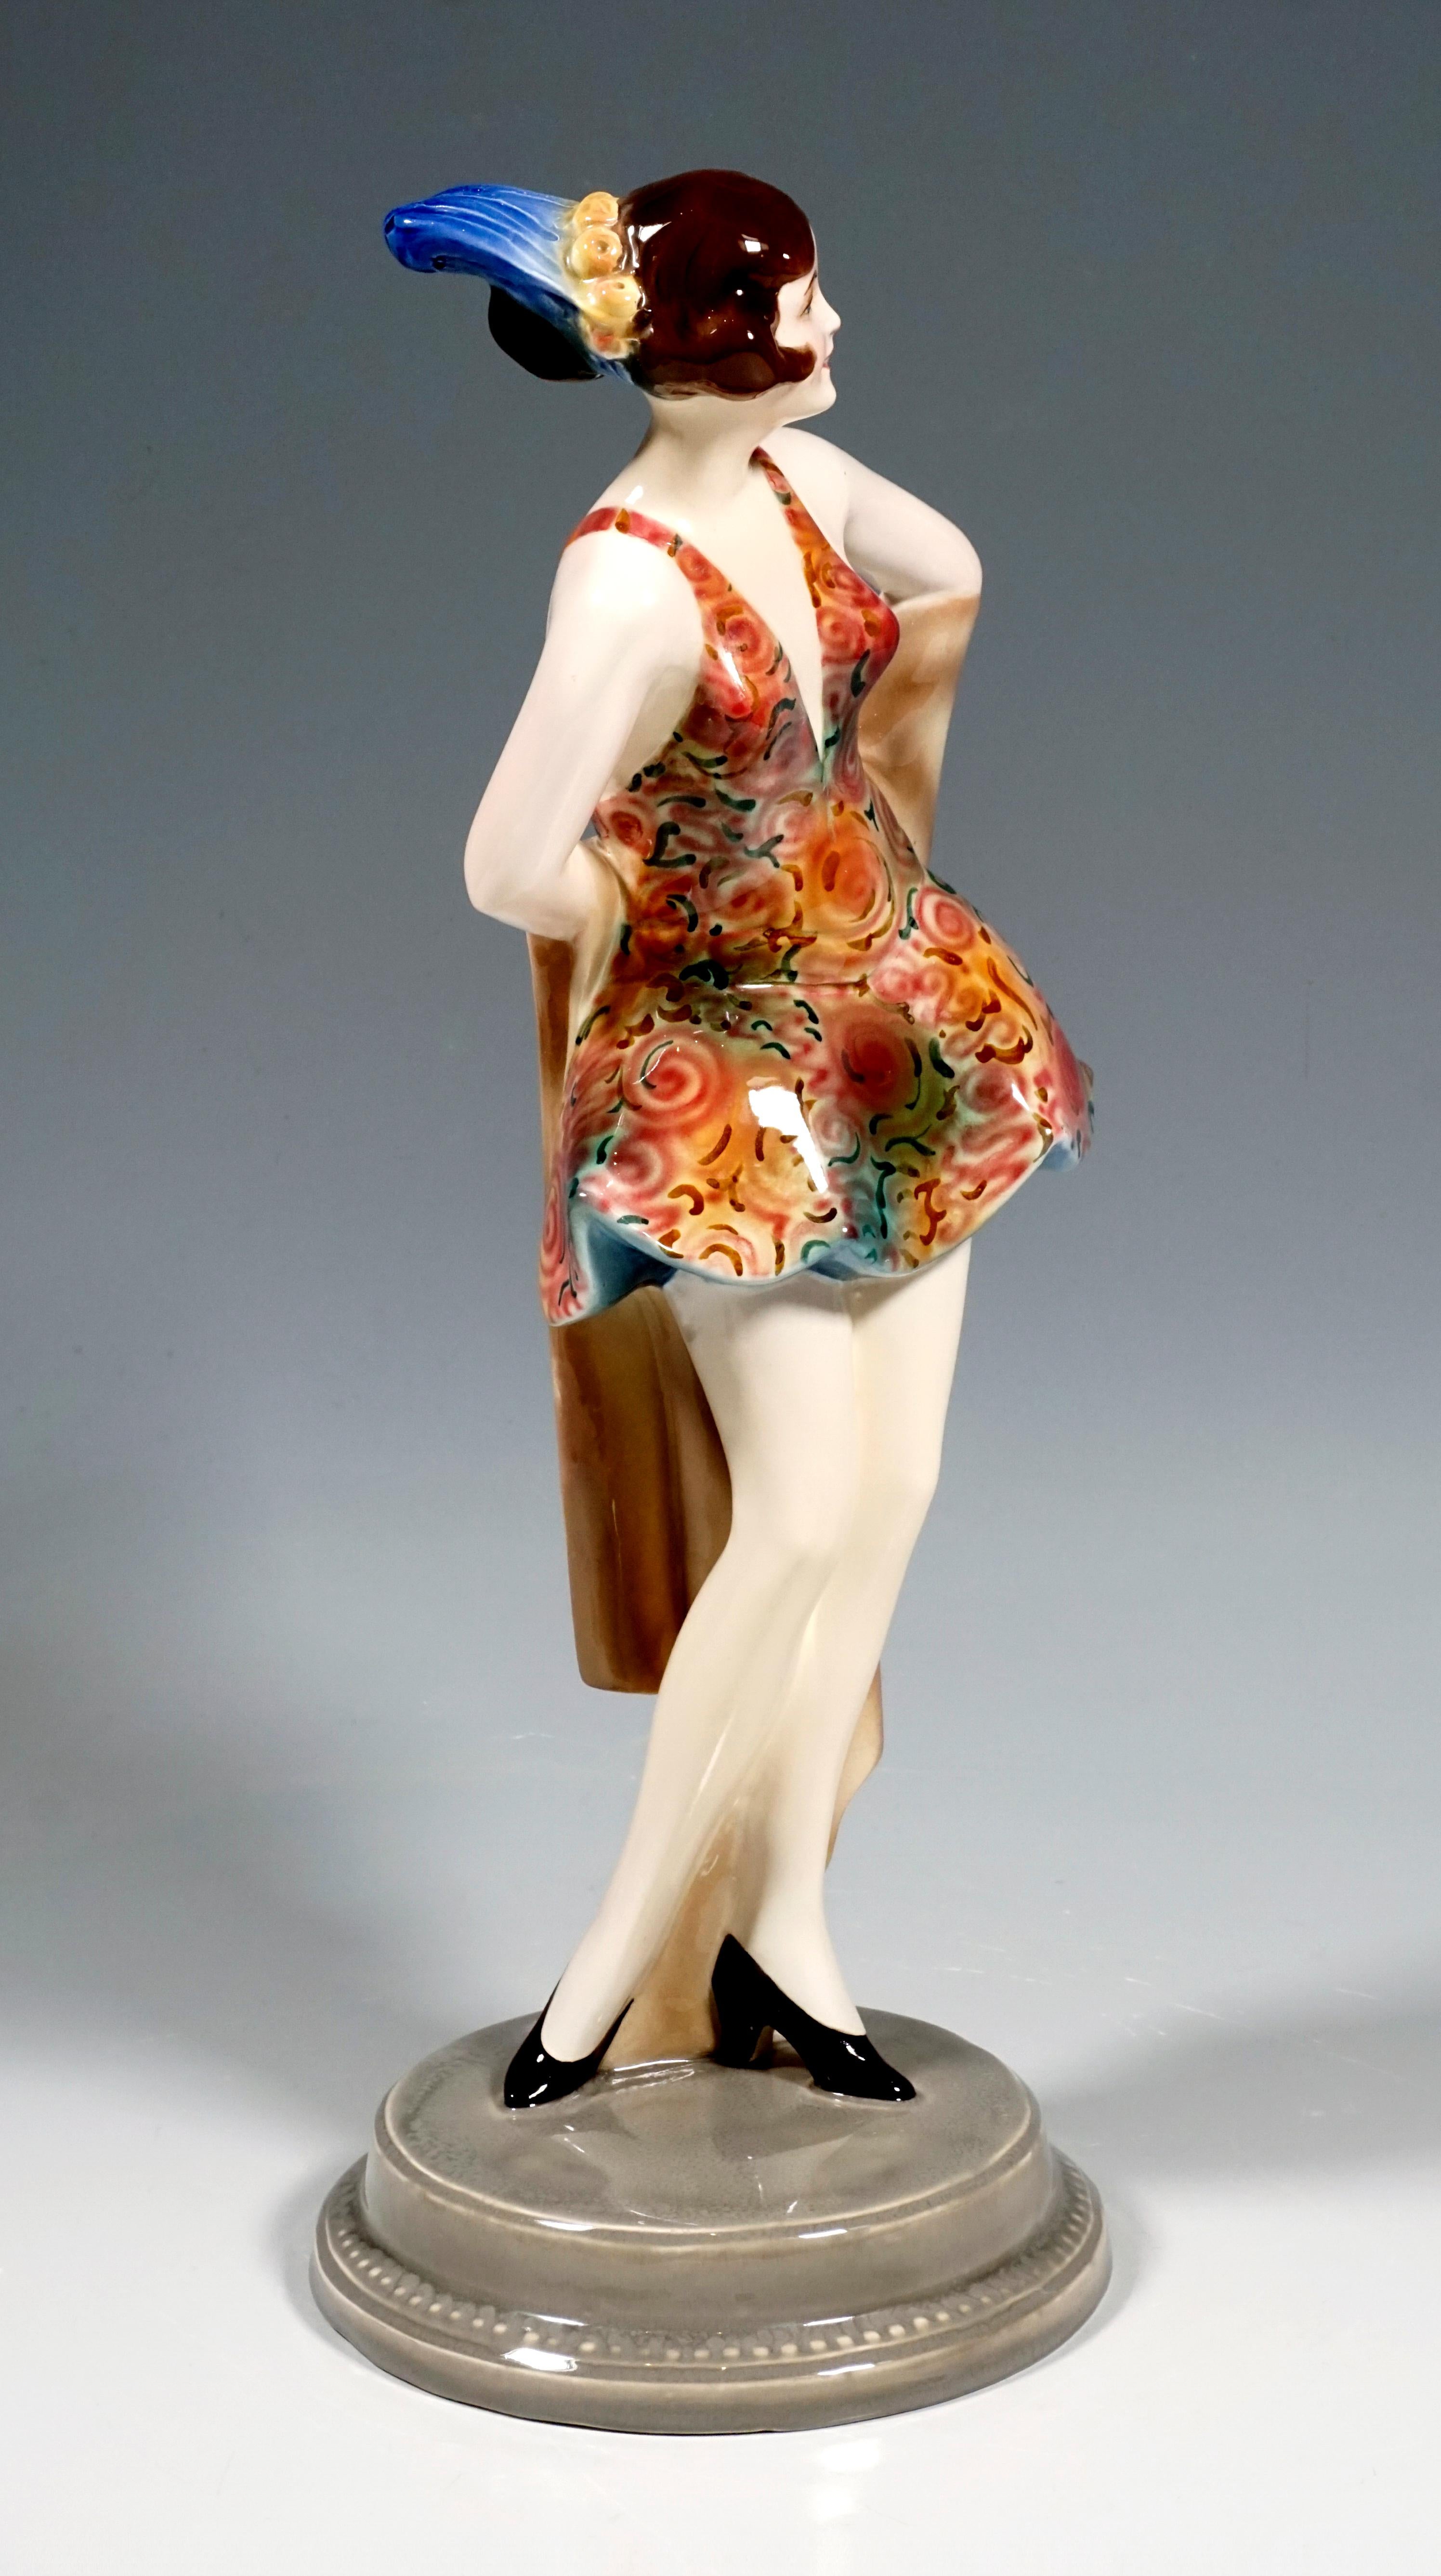 Rare figurine Art Déco Goldscheider Ceramics
La danseuse porte une robe de danse dans les tons rouge-brun coupée bas sur le devant et dans le dos avec une jupe large et courte, avec un motif de fleurs stylisées. Ses cheveux bruns sont relevés par